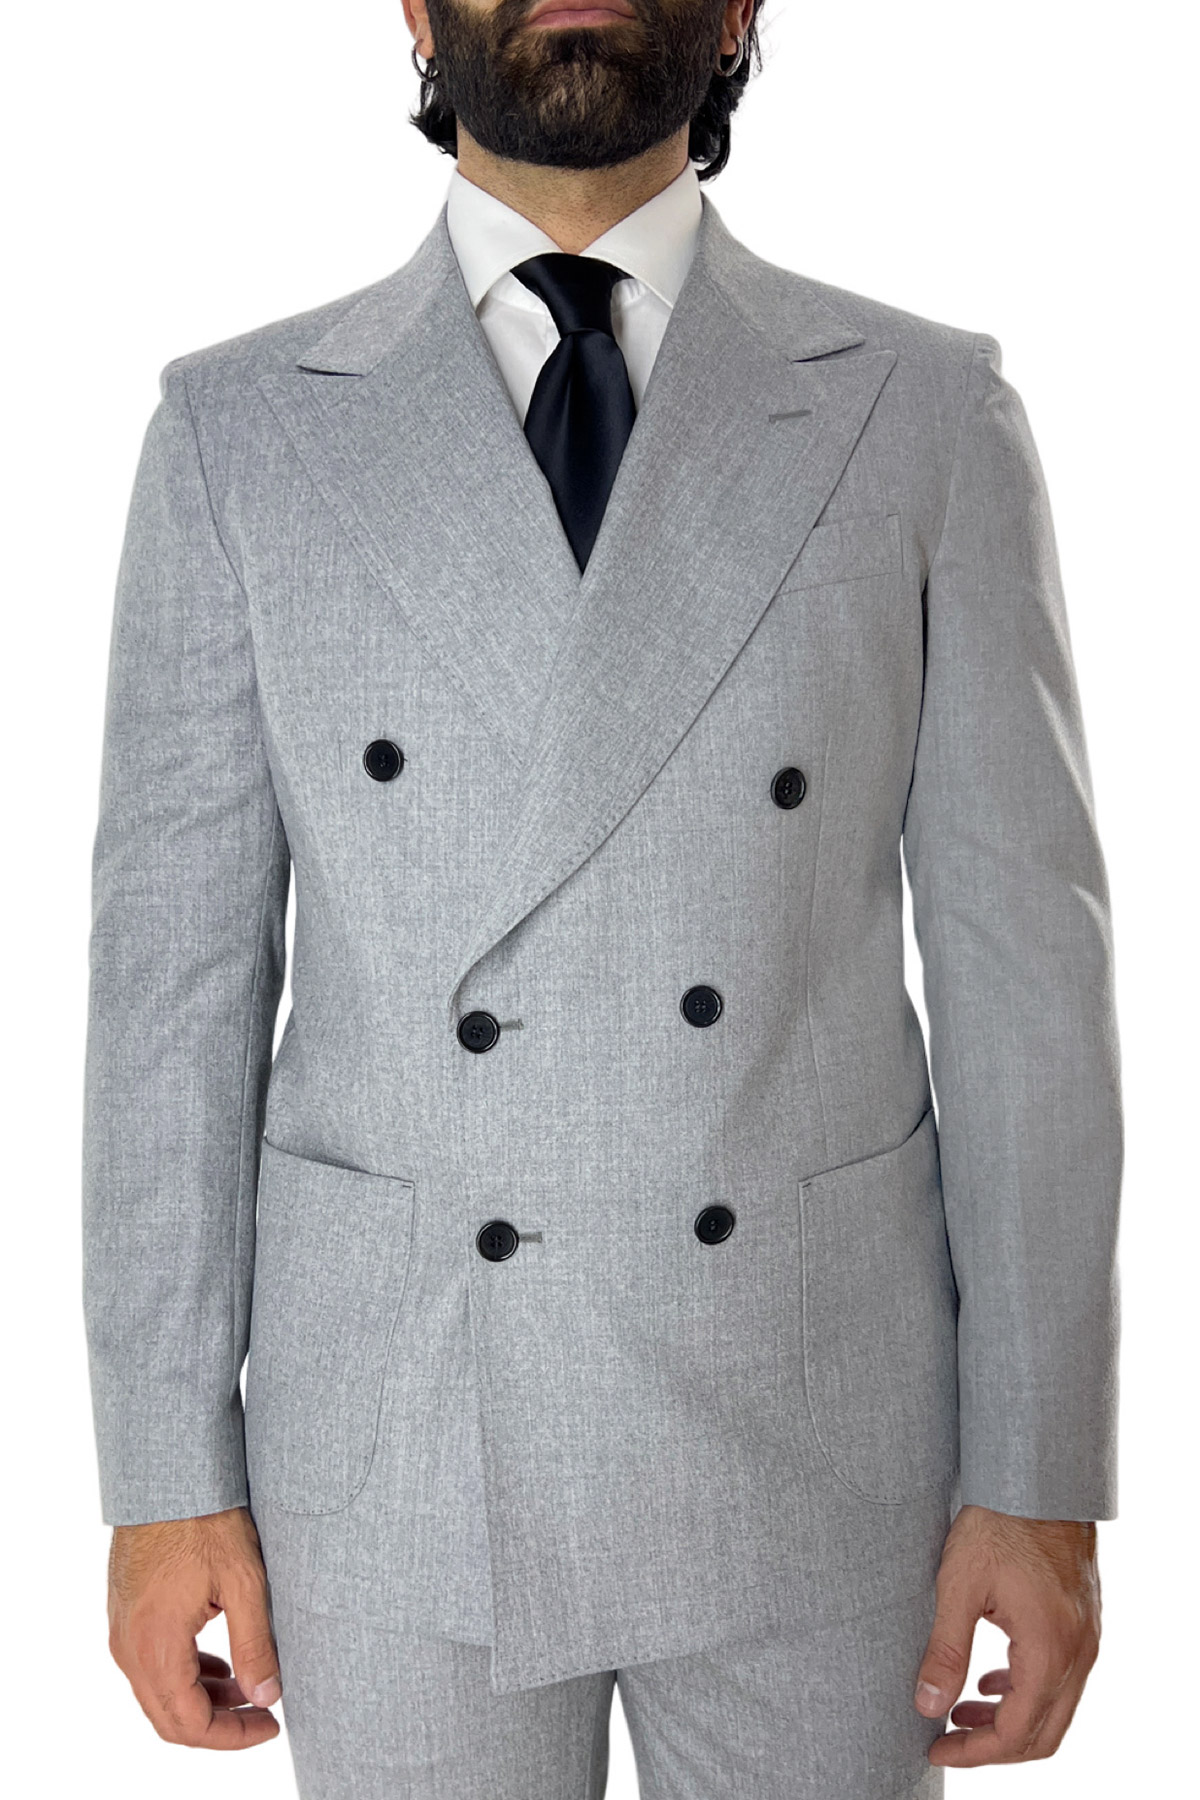 Giacca uomo doppiopetto grigio chiaro in lana sartoriale slim fit rever largo vitale barberis canonico.